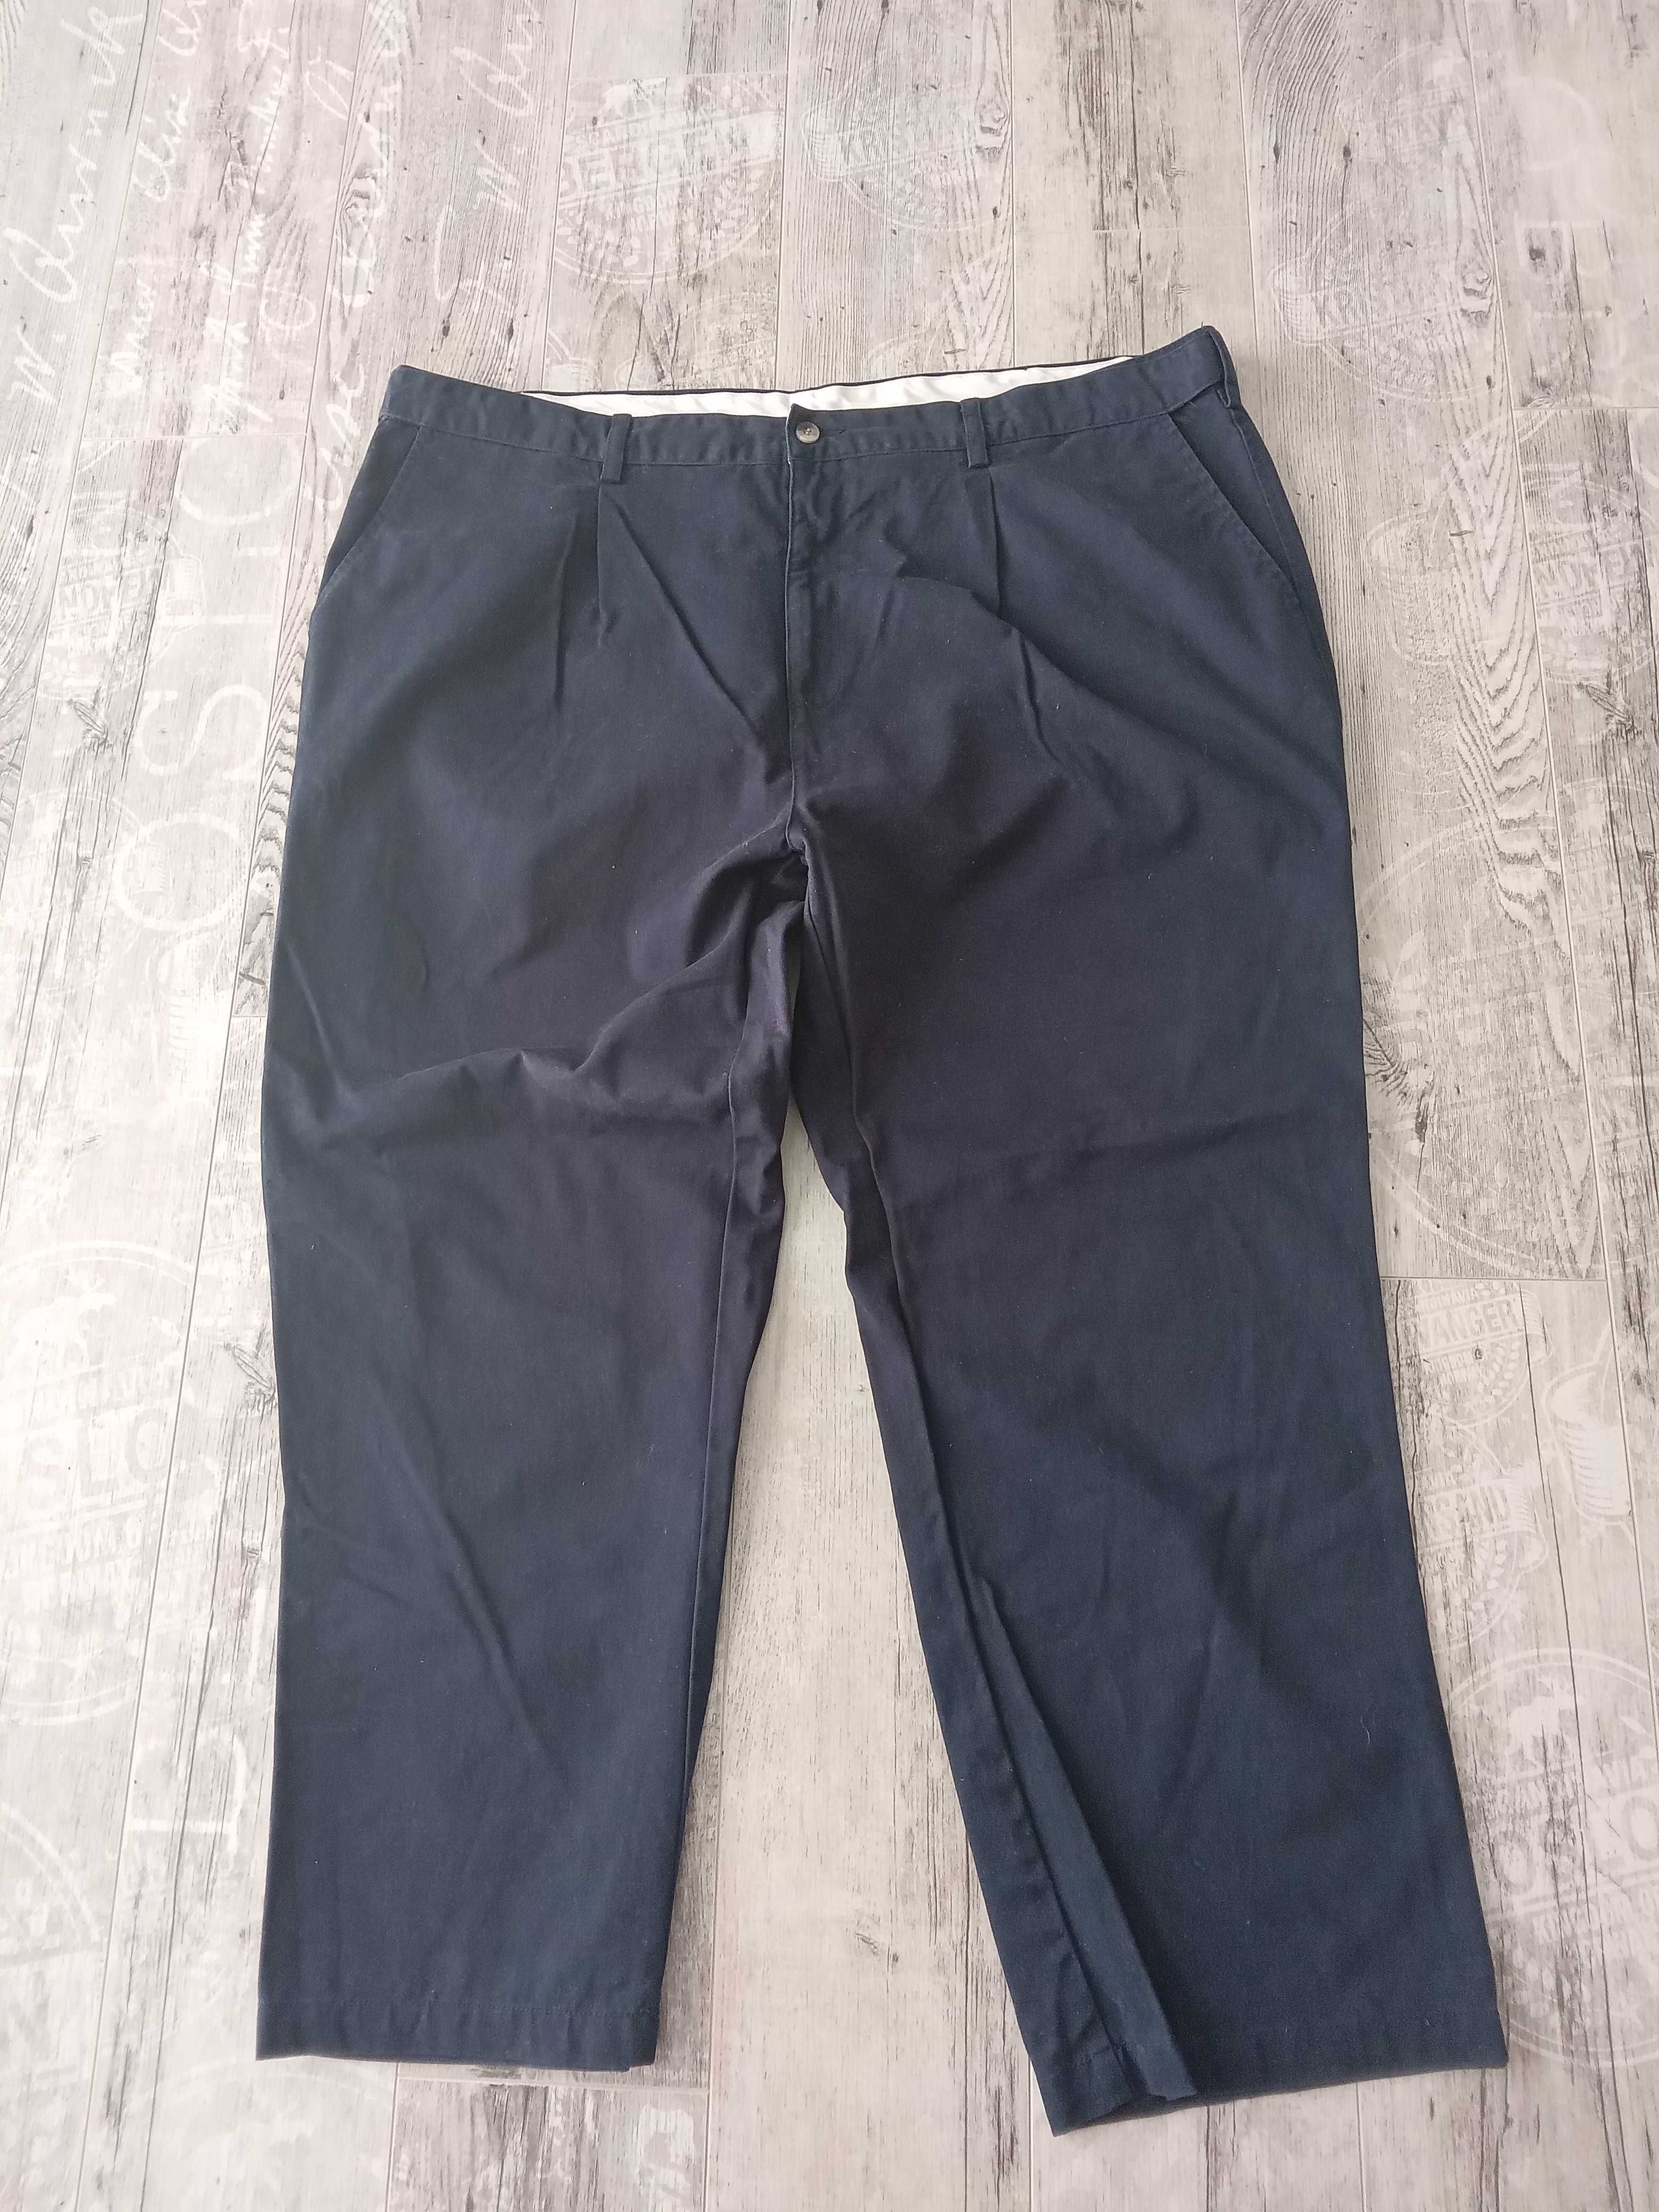 59* Cotton spodnie męskie chino granatowe pas 116 cm